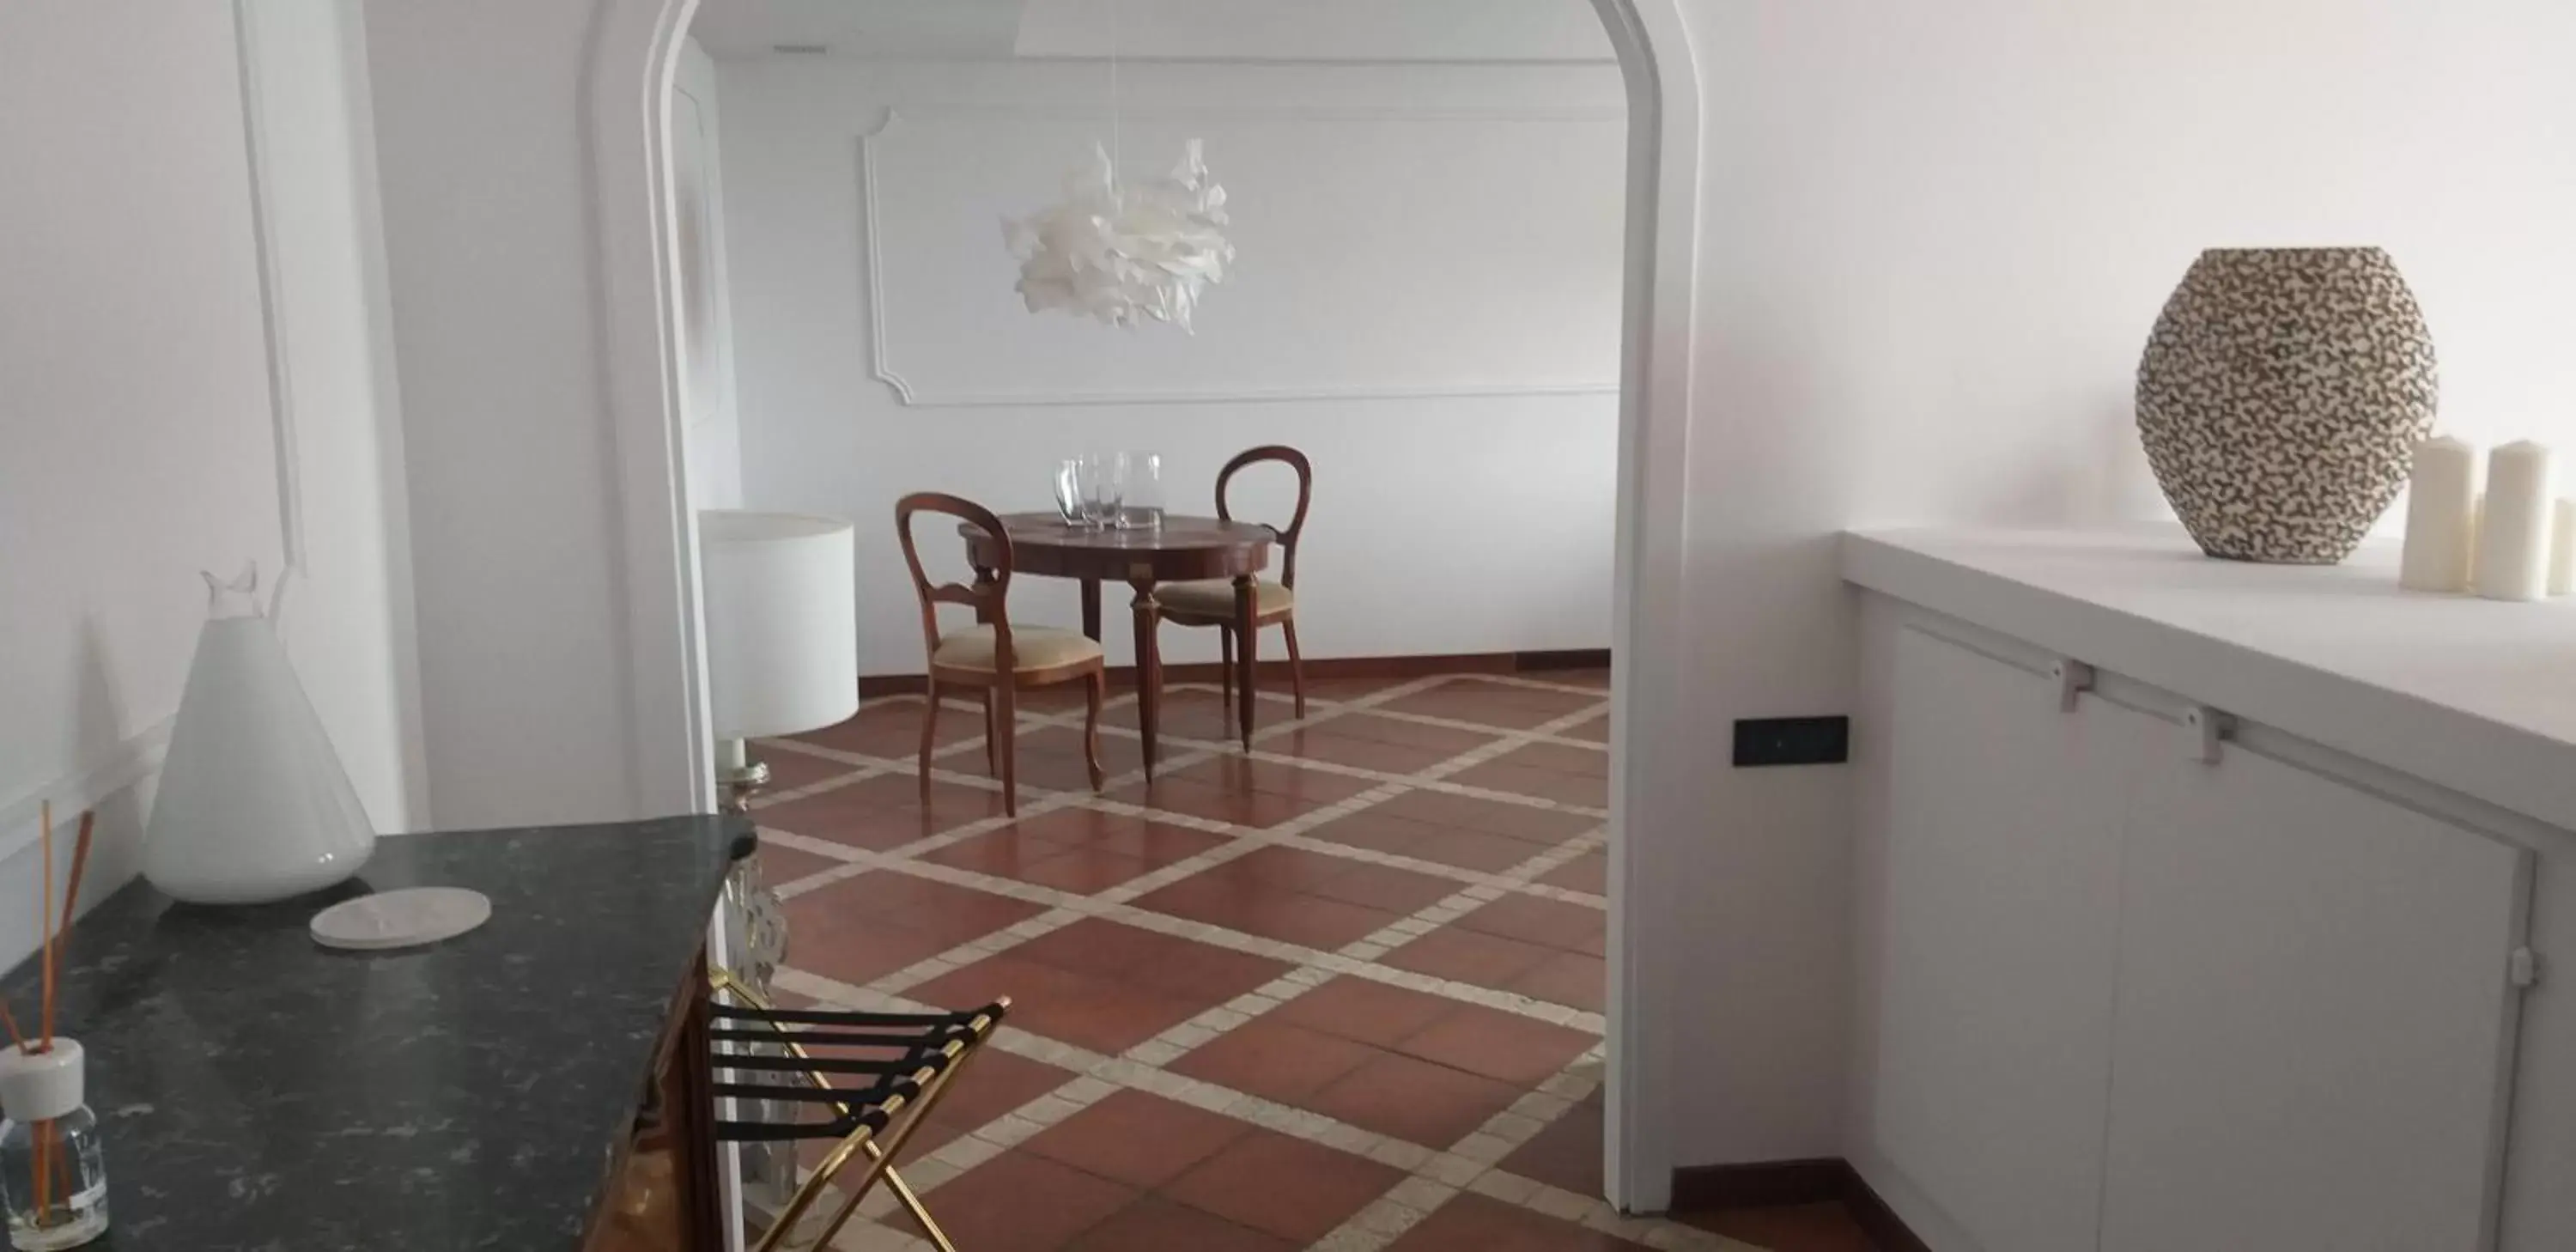 Dining Area in Villa Pocci